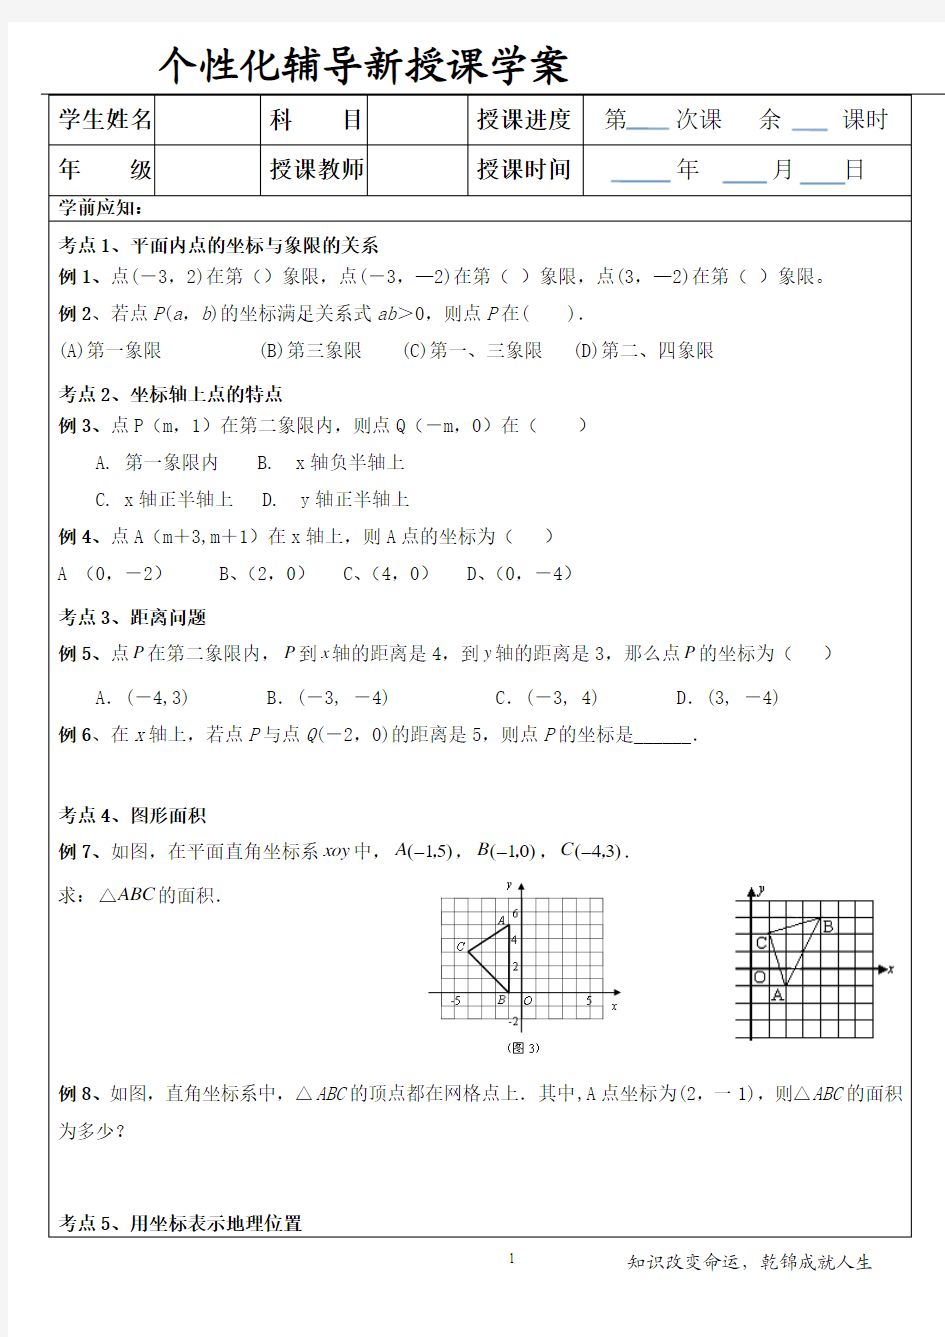 平面直角坐标系 (3)